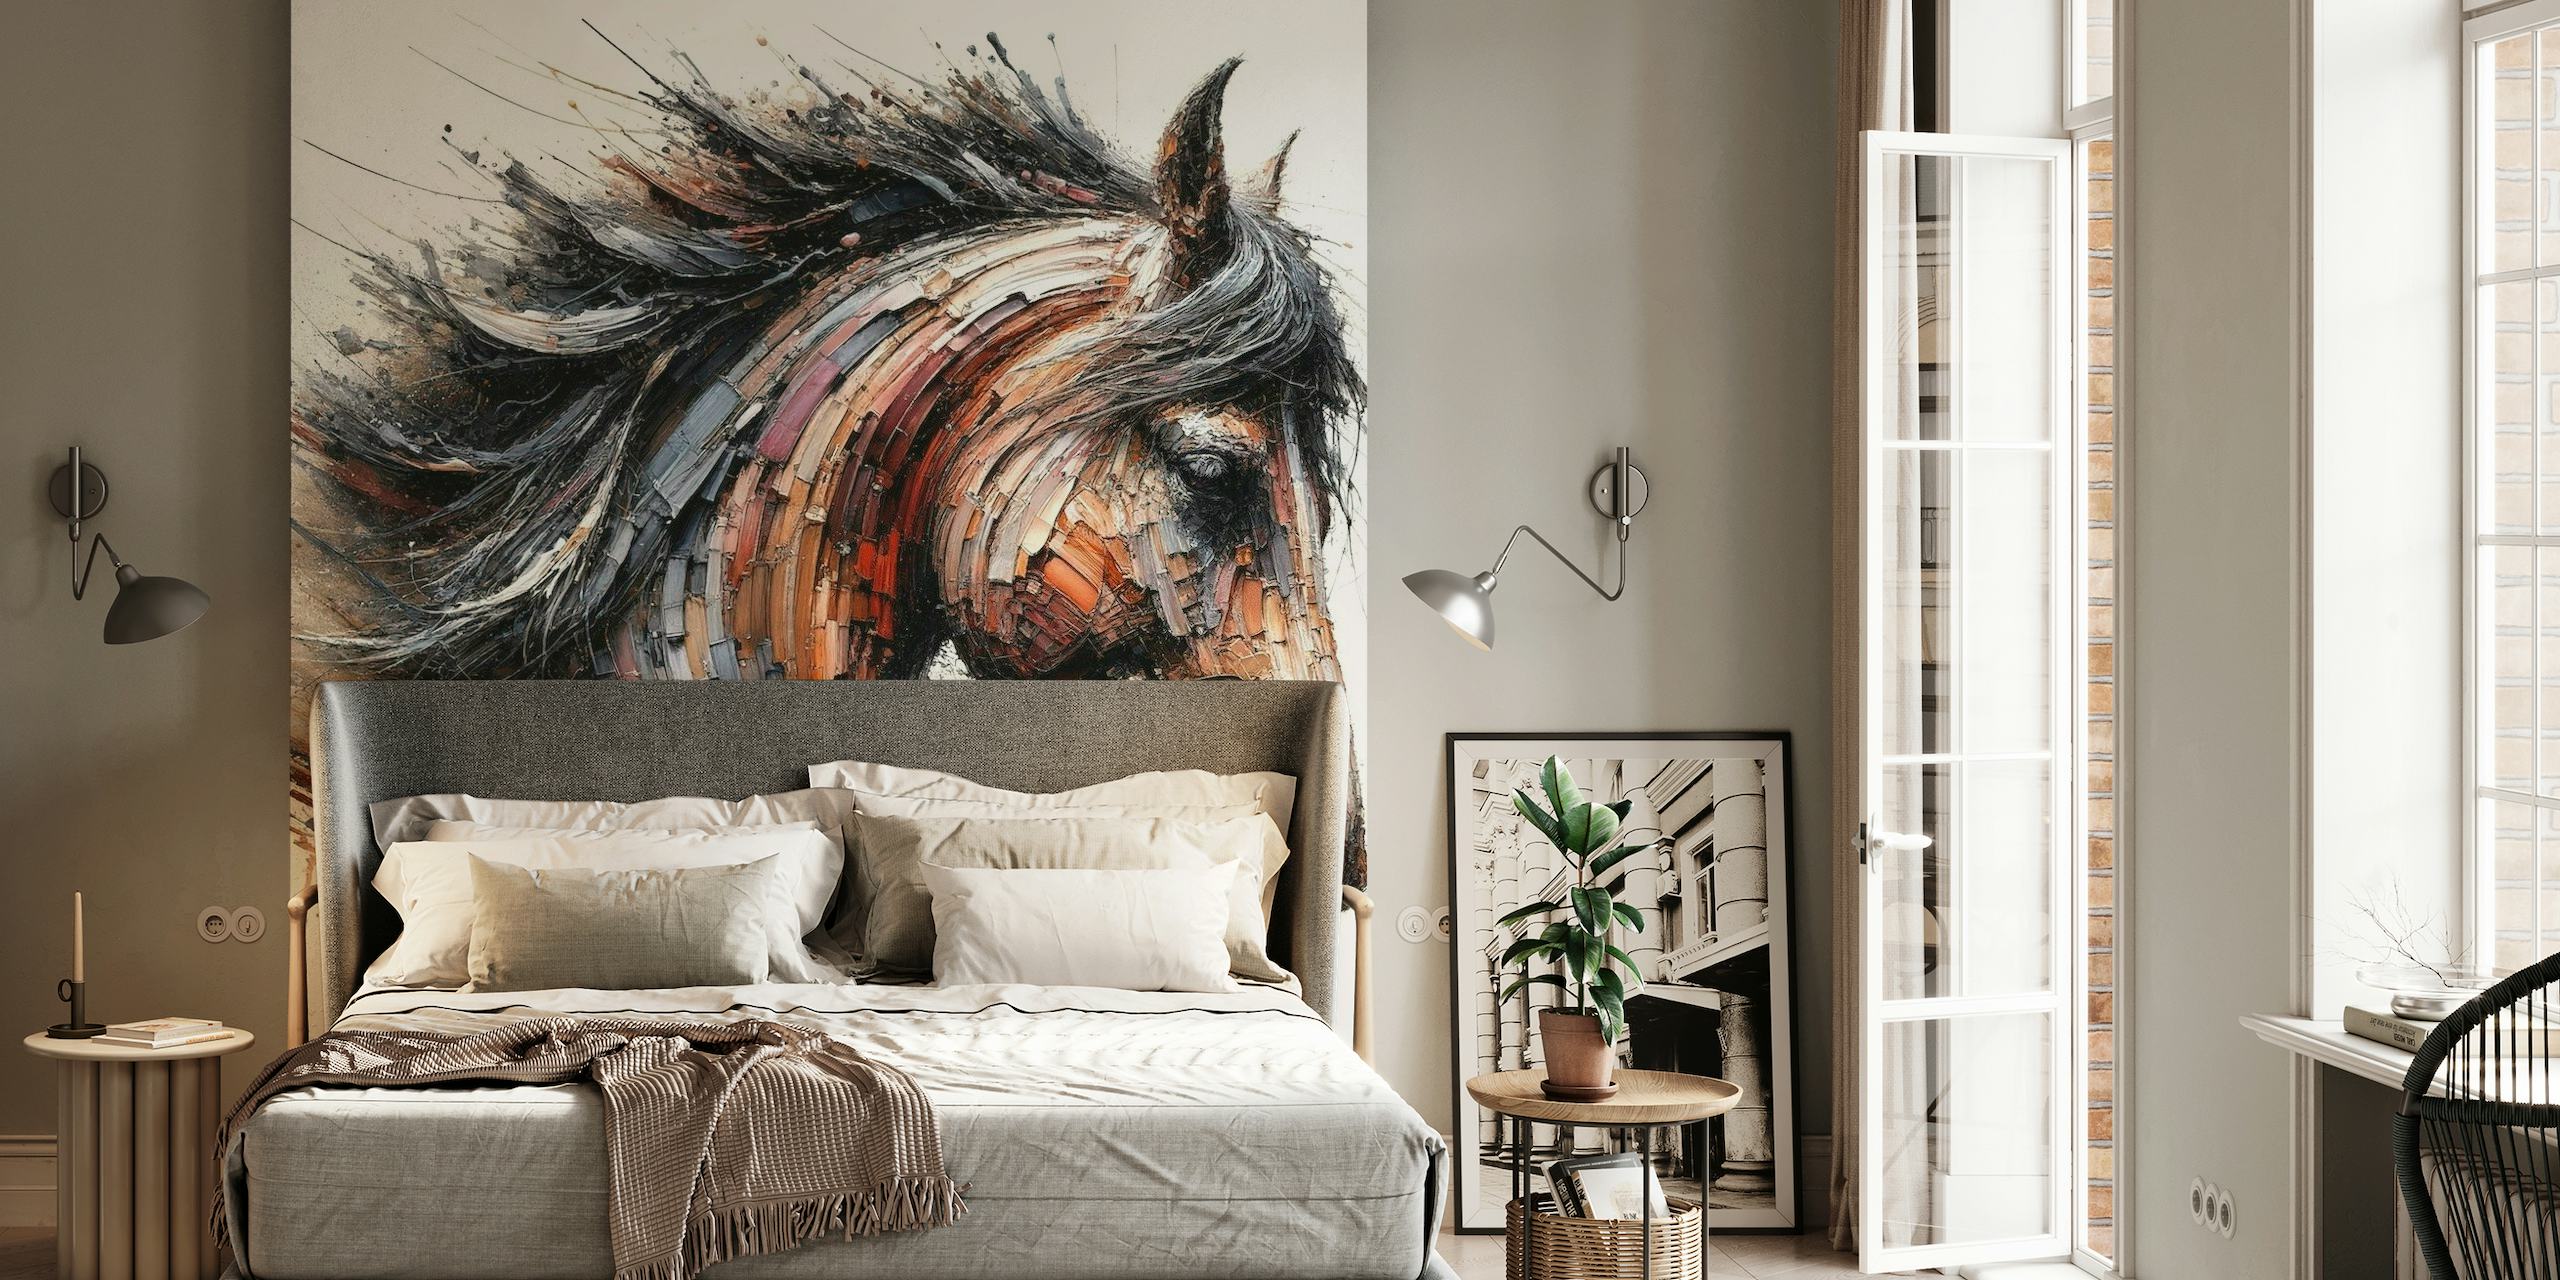 Fotomural de caballo dinámico con pinceladas expresivas